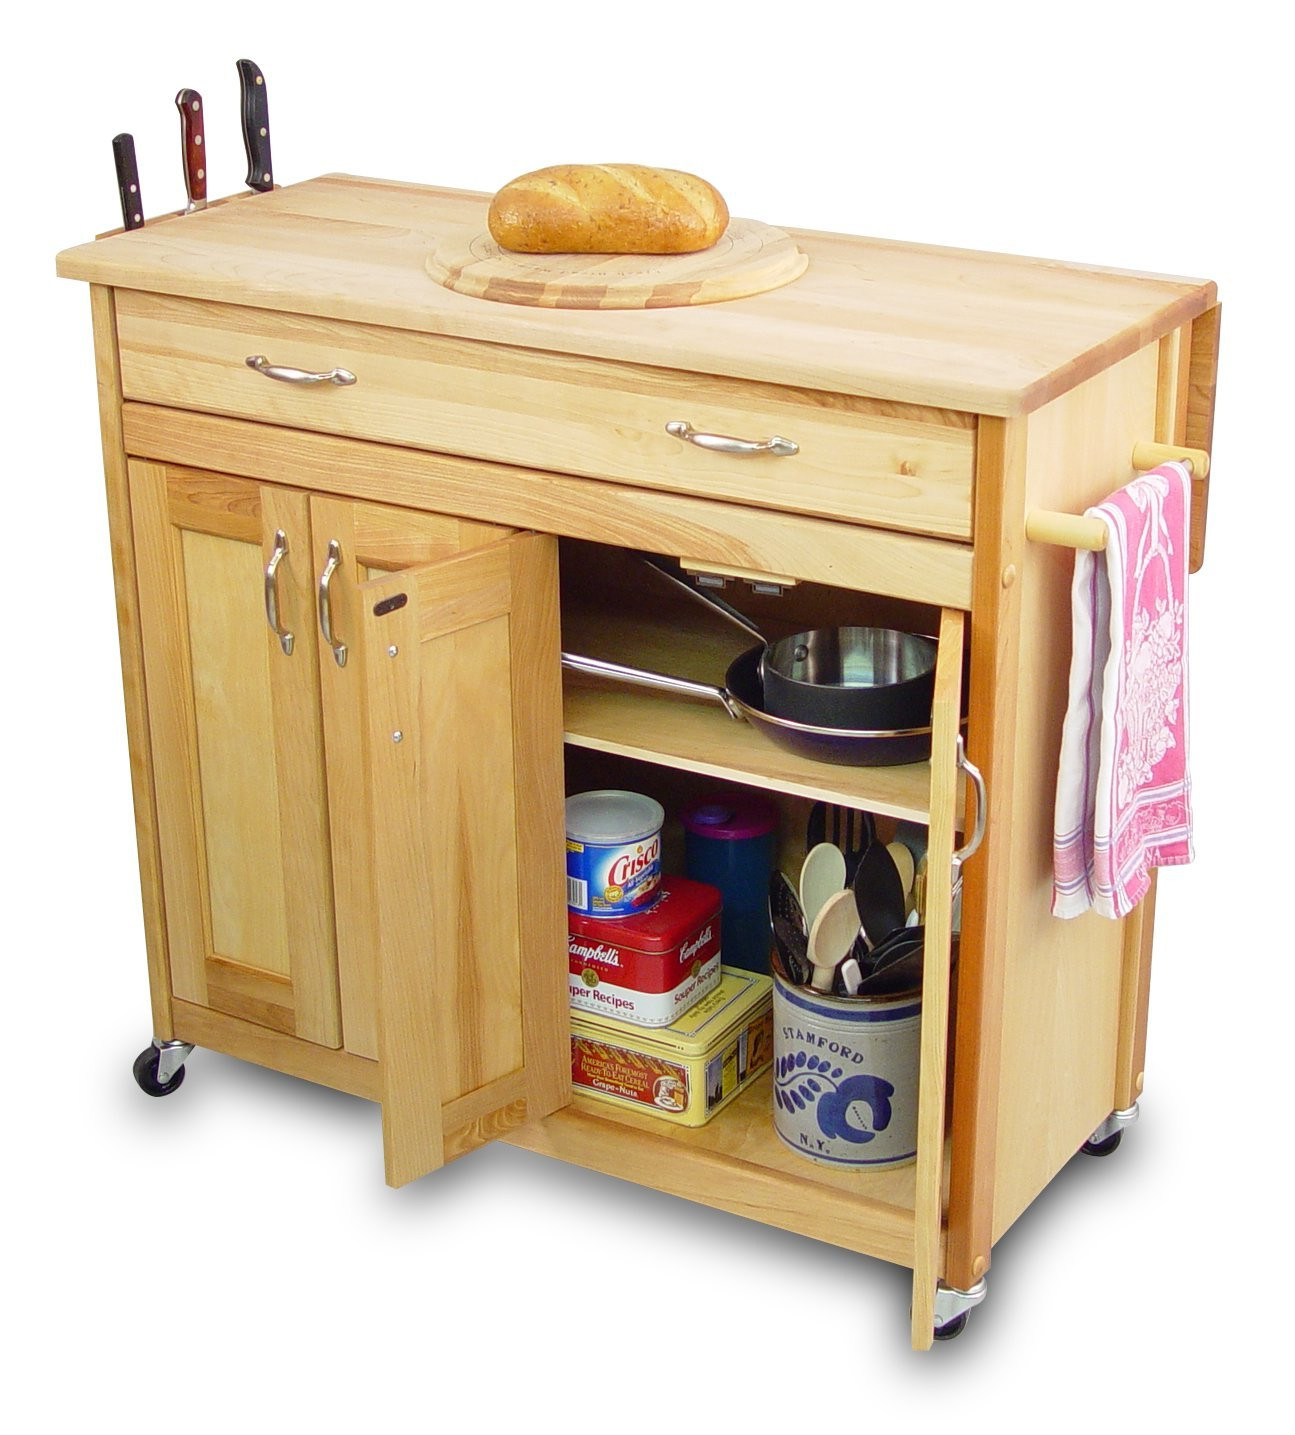 Wooden Kitchen Storage
 Kitchen Storage Cabinets Design Inspiration Home Design